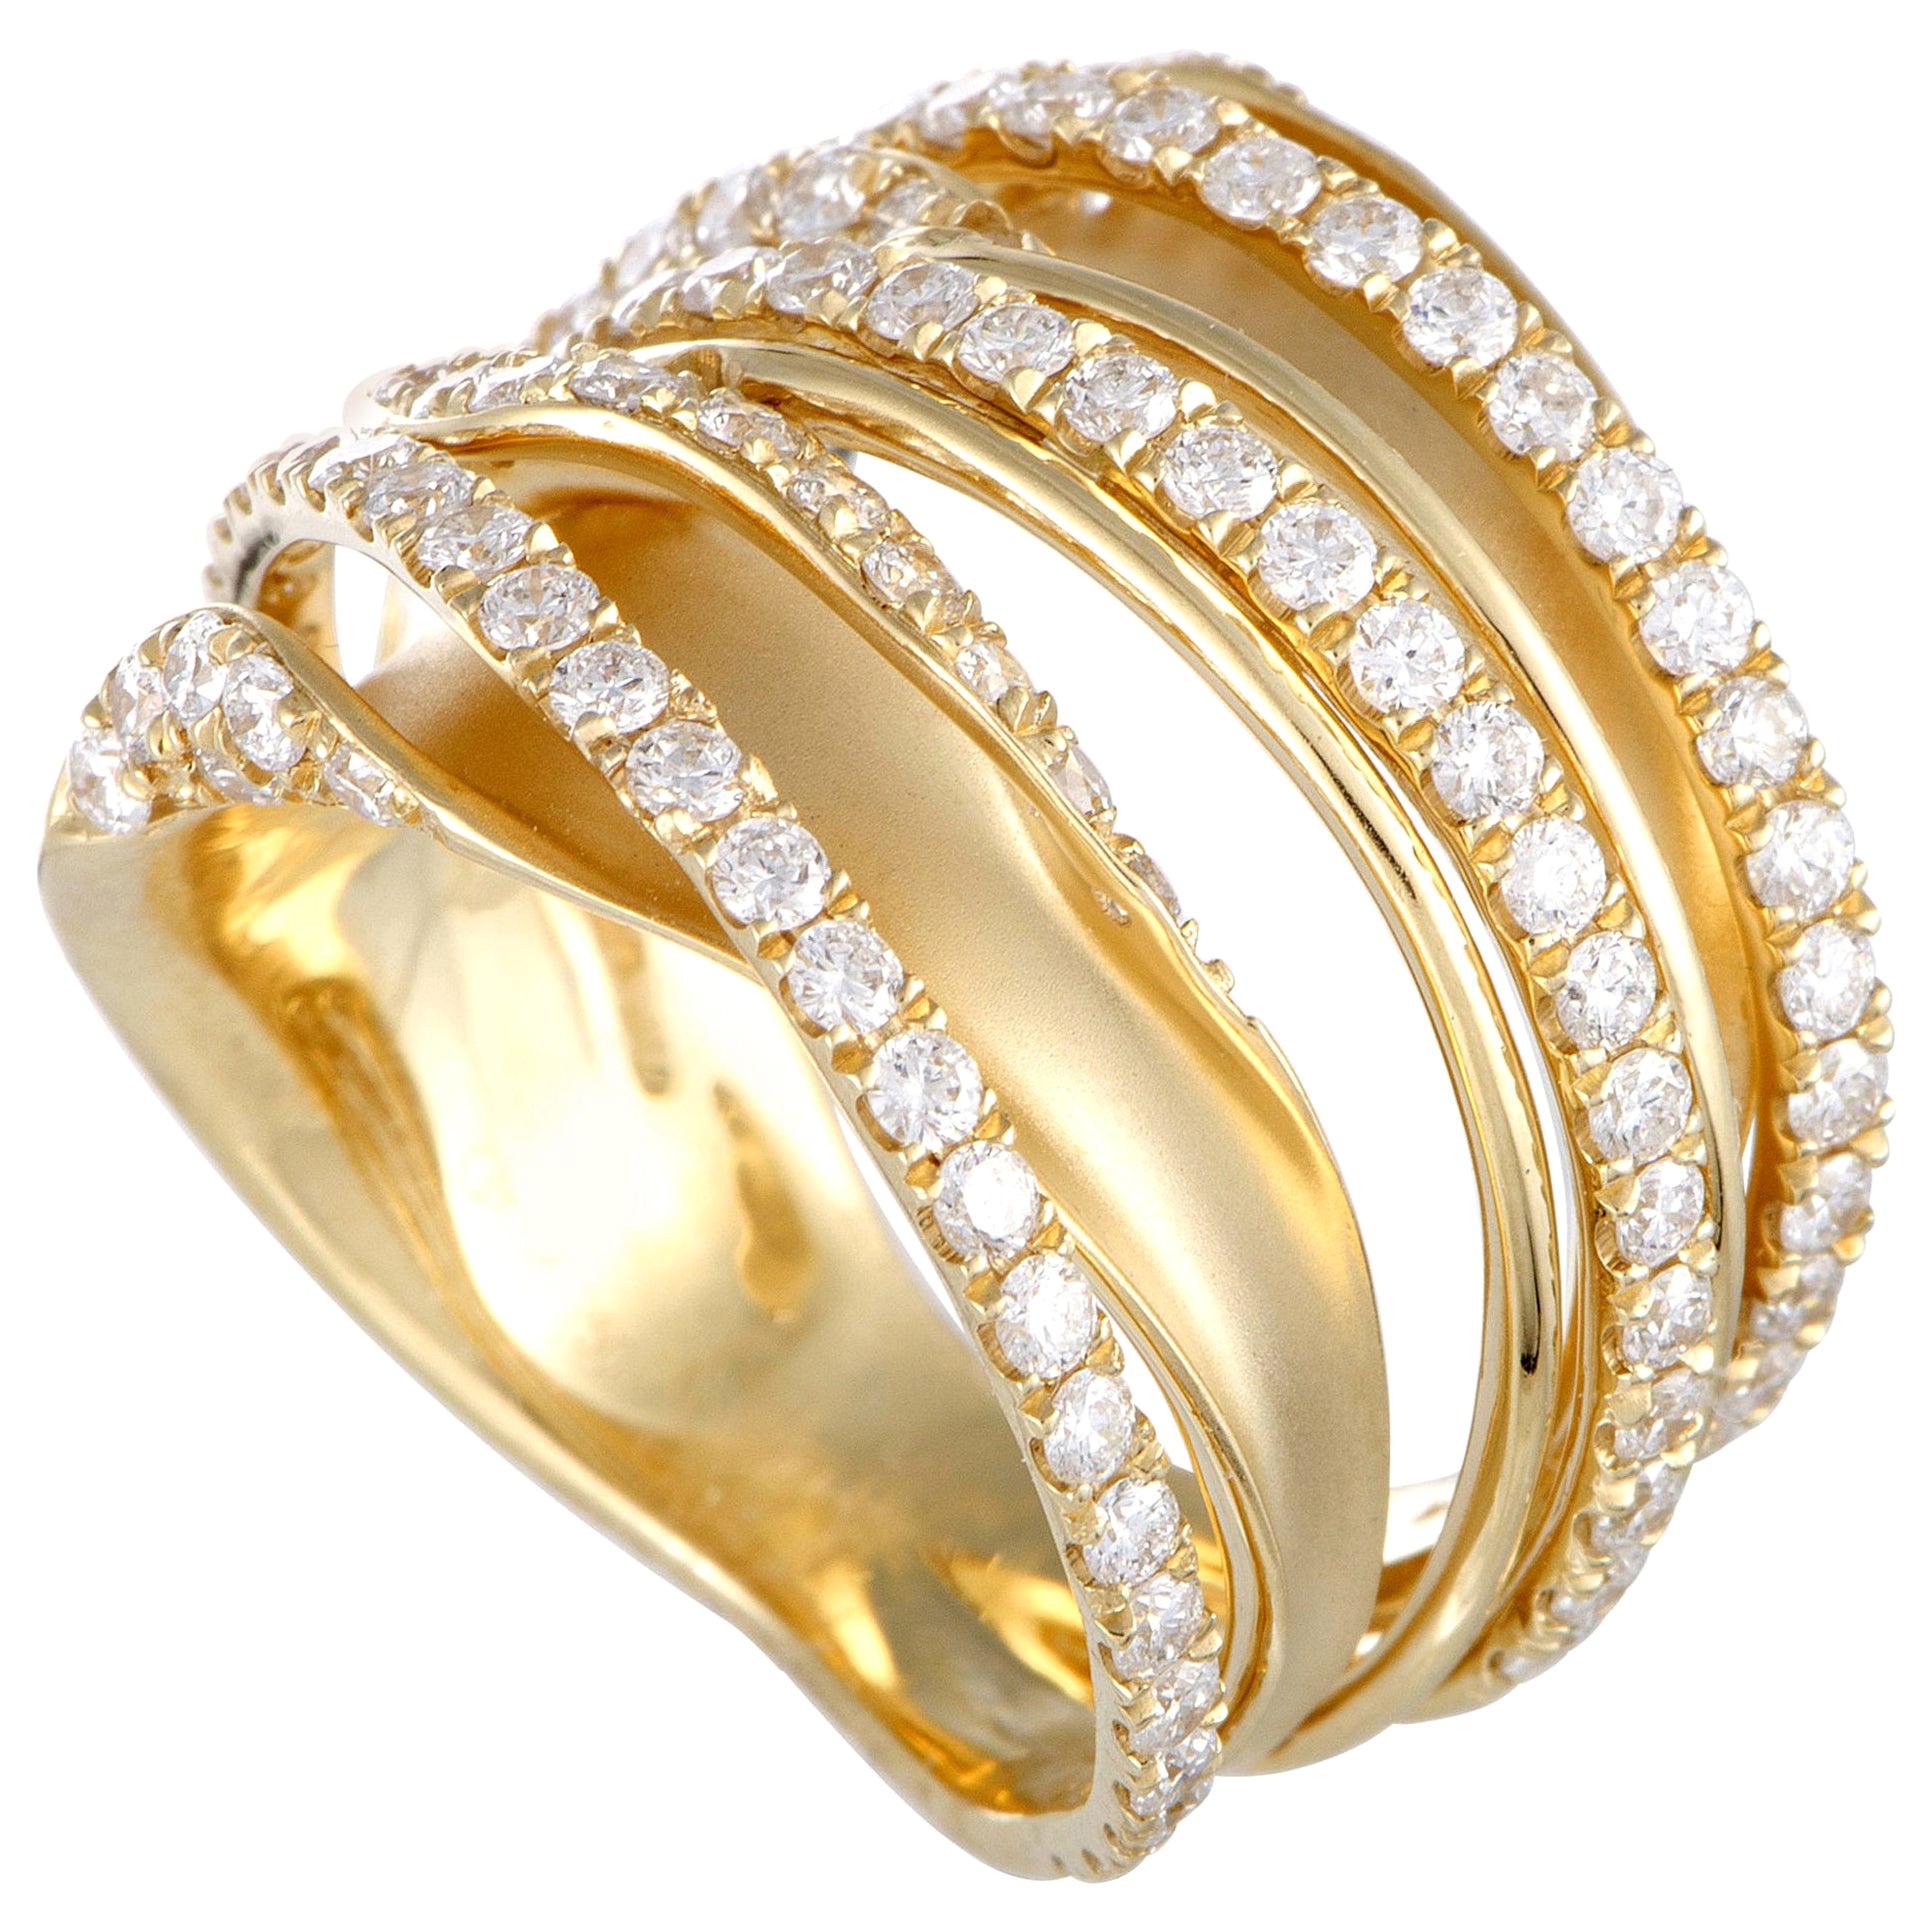 LB Exclusive 18 Karat Yellow Gold 1.52 Carat Diamond Pave Multi-Band Ring